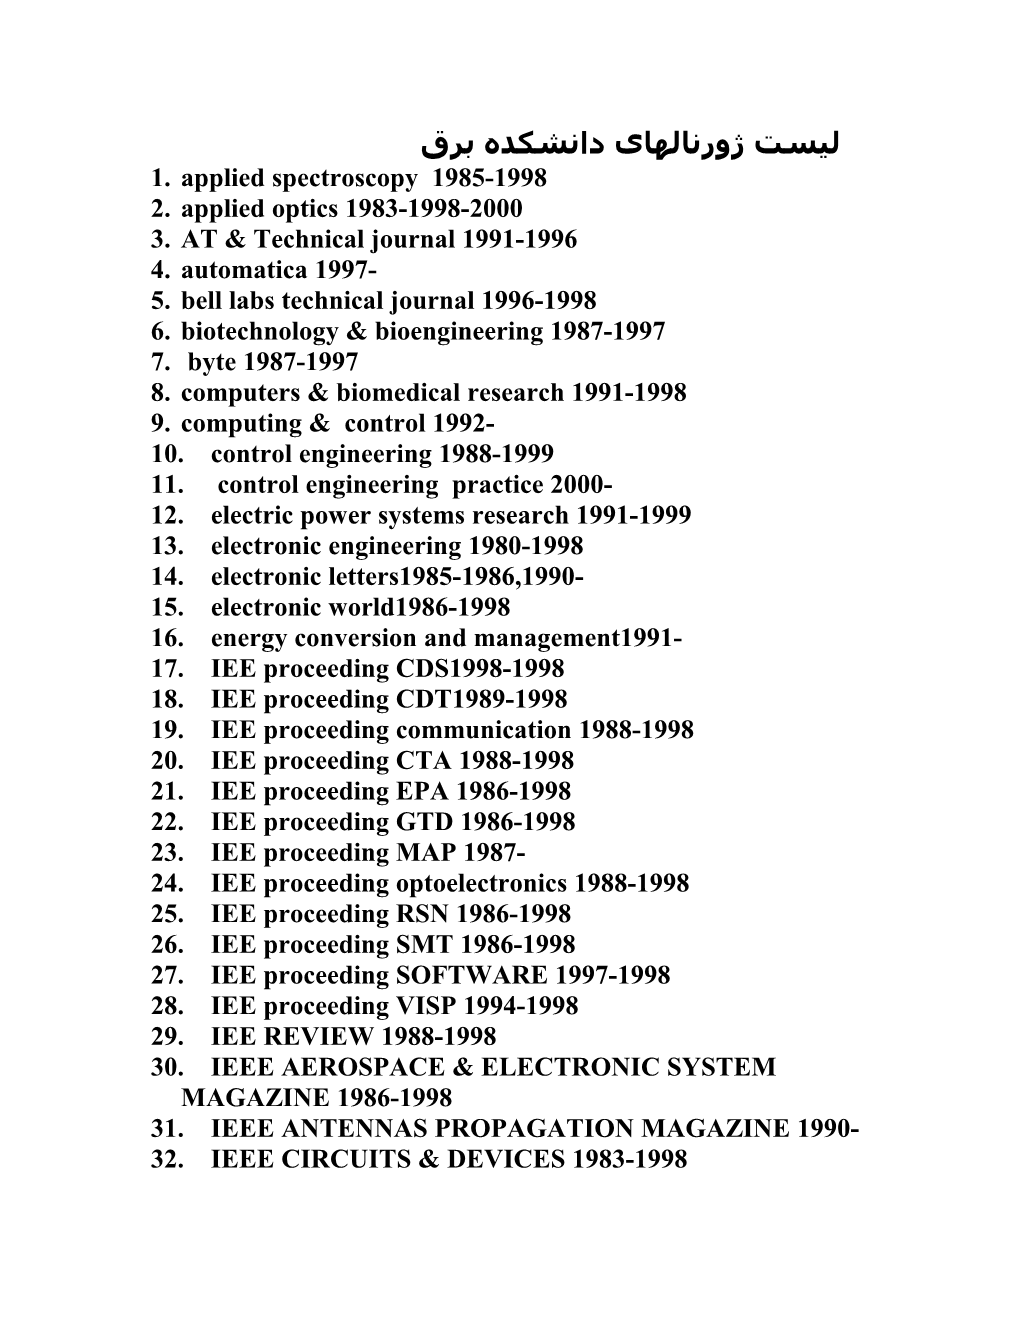 Applied Spectroscopy 1985-1998